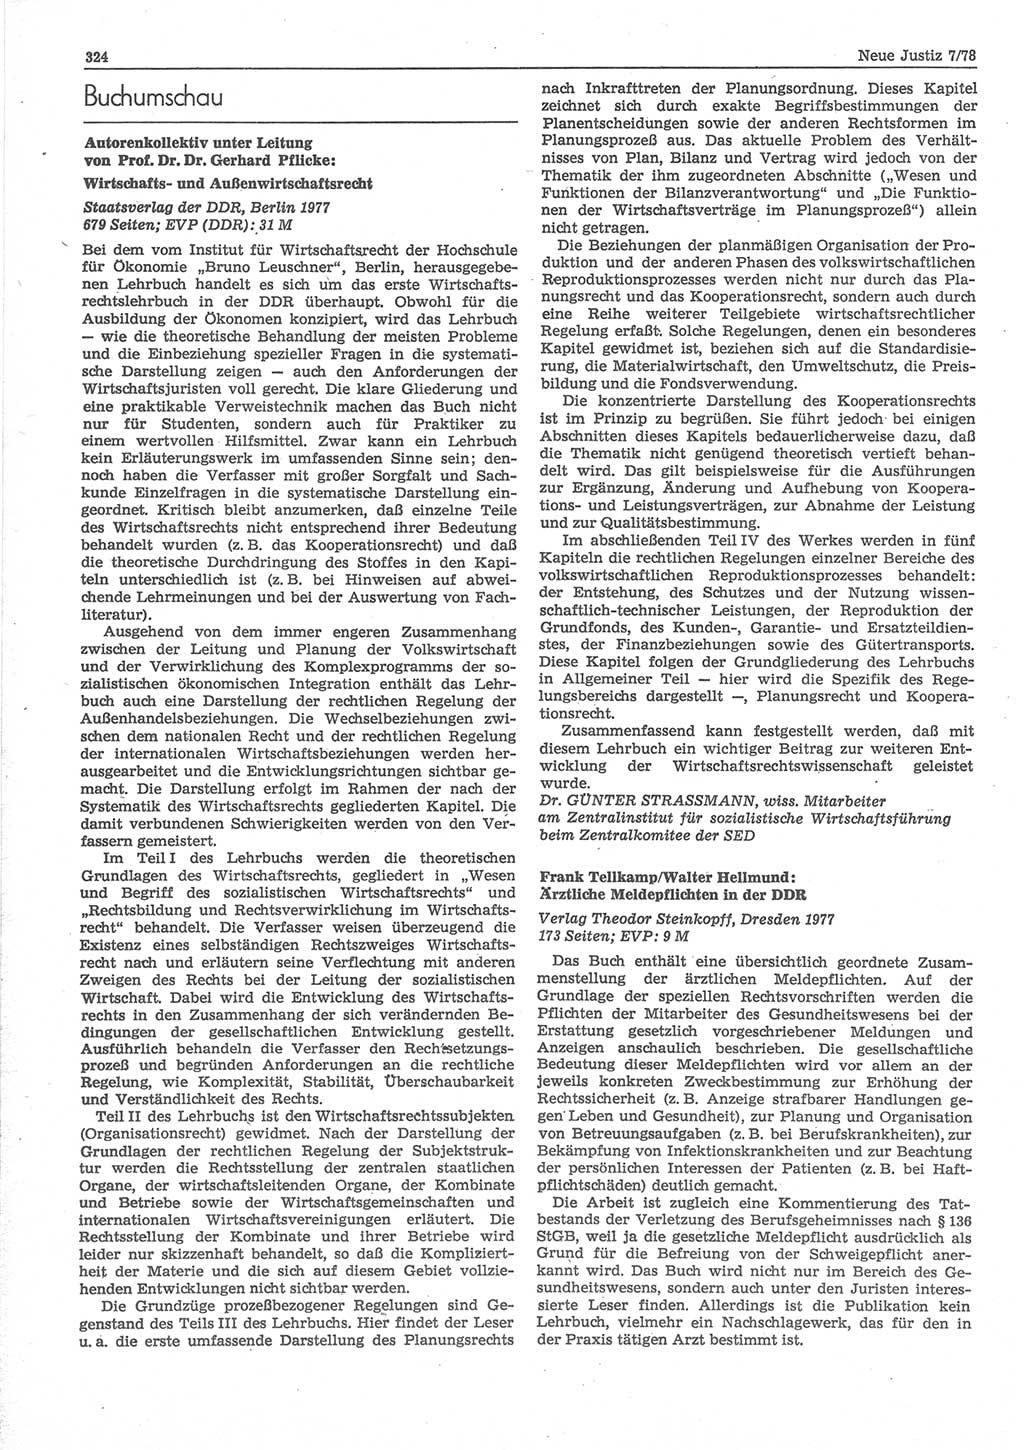 Neue Justiz (NJ), Zeitschrift für sozialistisches Recht und Gesetzlichkeit [Deutsche Demokratische Republik (DDR)], 32. Jahrgang 1978, Seite 324 (NJ DDR 1978, S. 324)